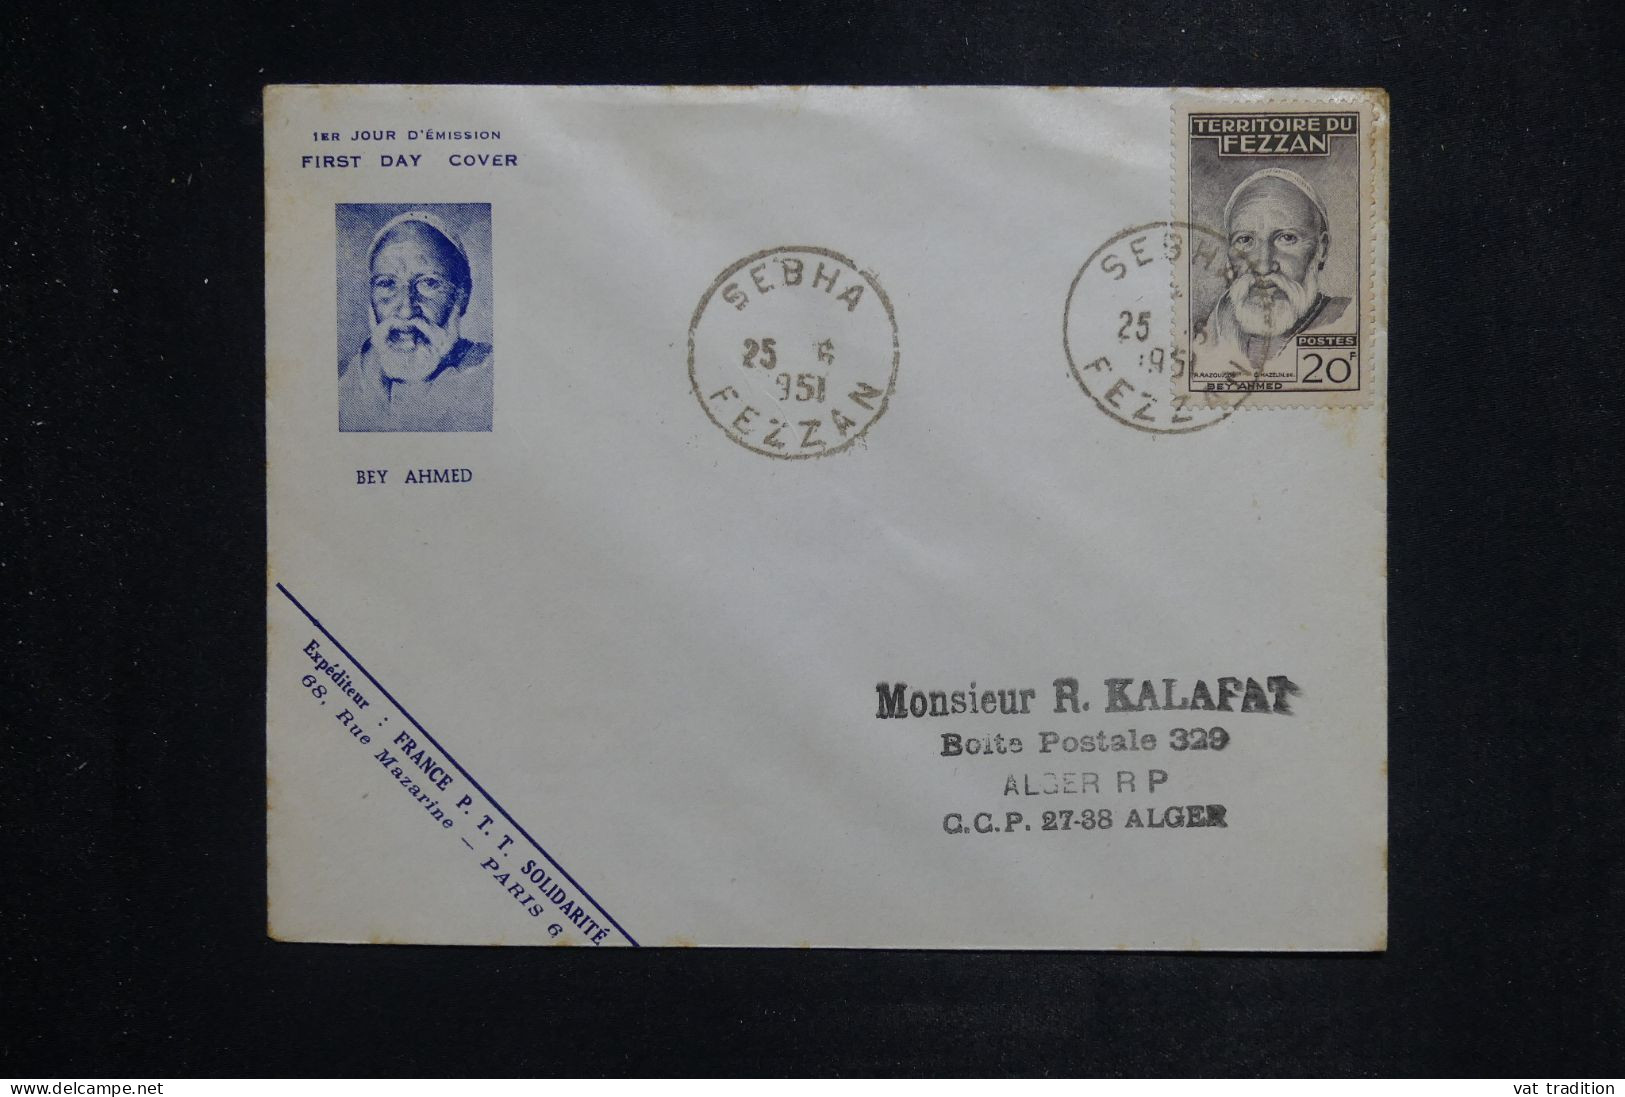 FEZZAN  - Enveloppe FDC En 1951 - Beyahmed - L 151104 - Cartas & Documentos